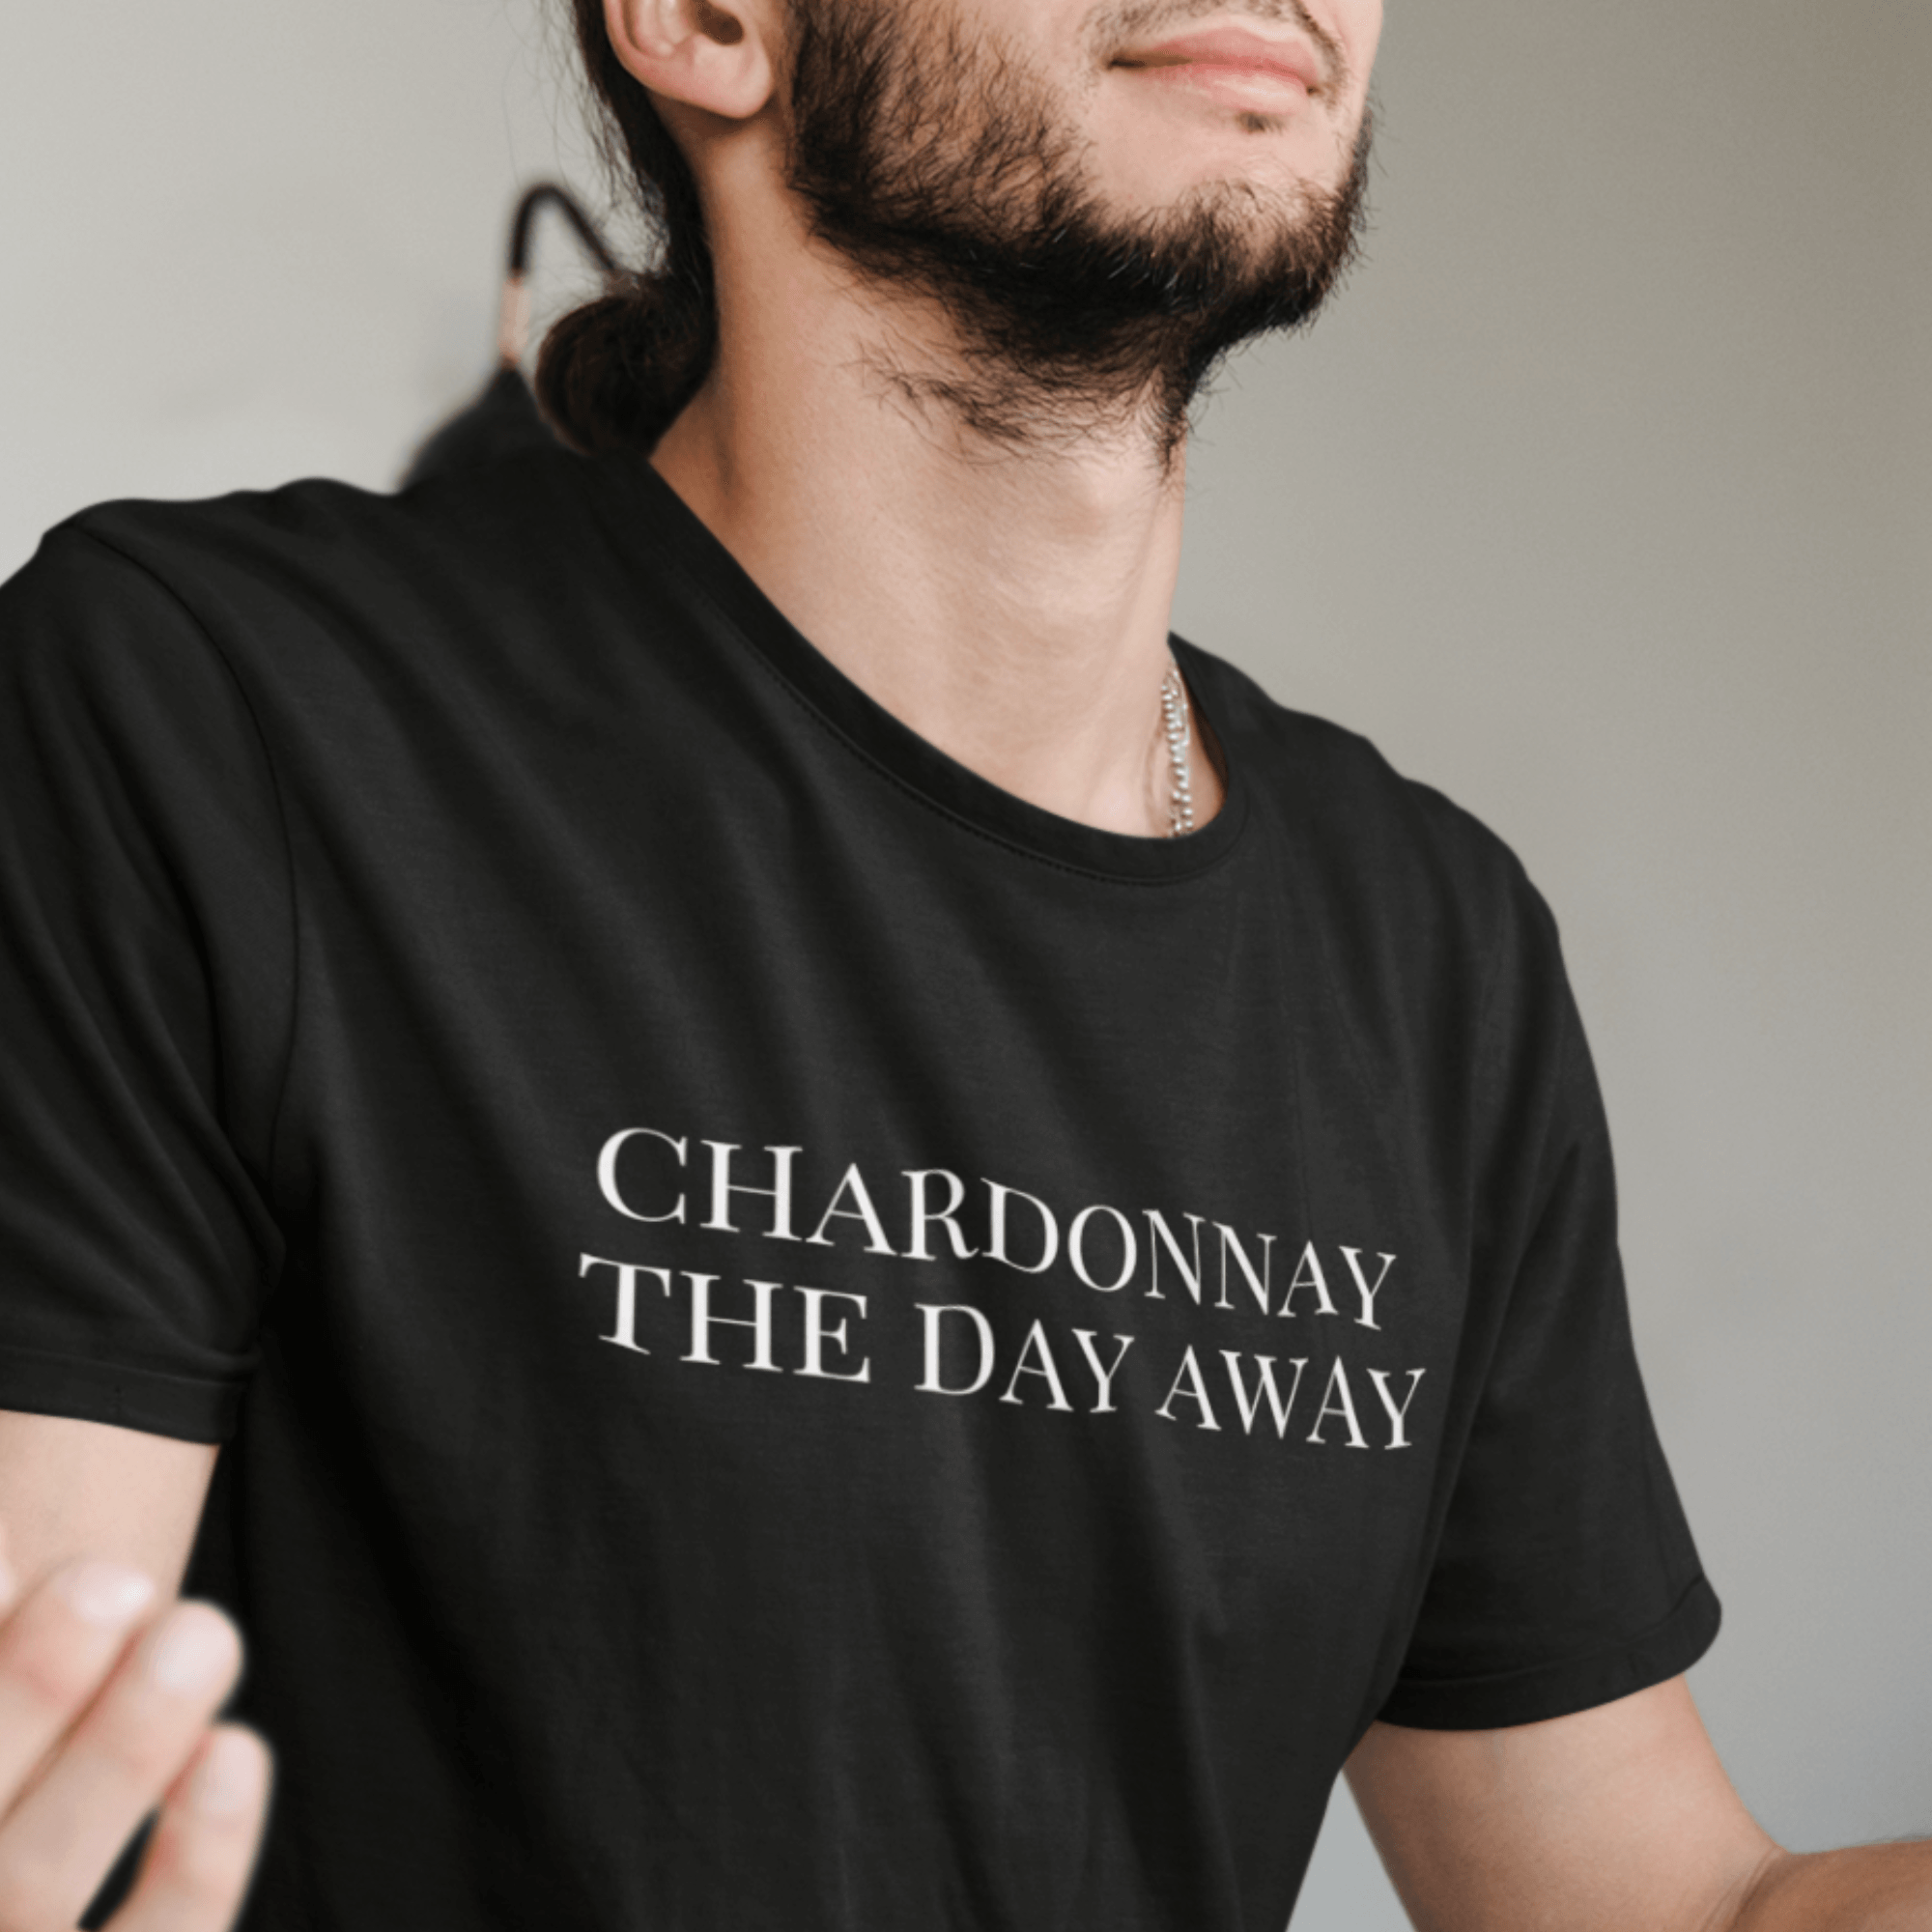 CHARDONNAY THE DAY AWAY - Herren Shirt - einschenken24.de